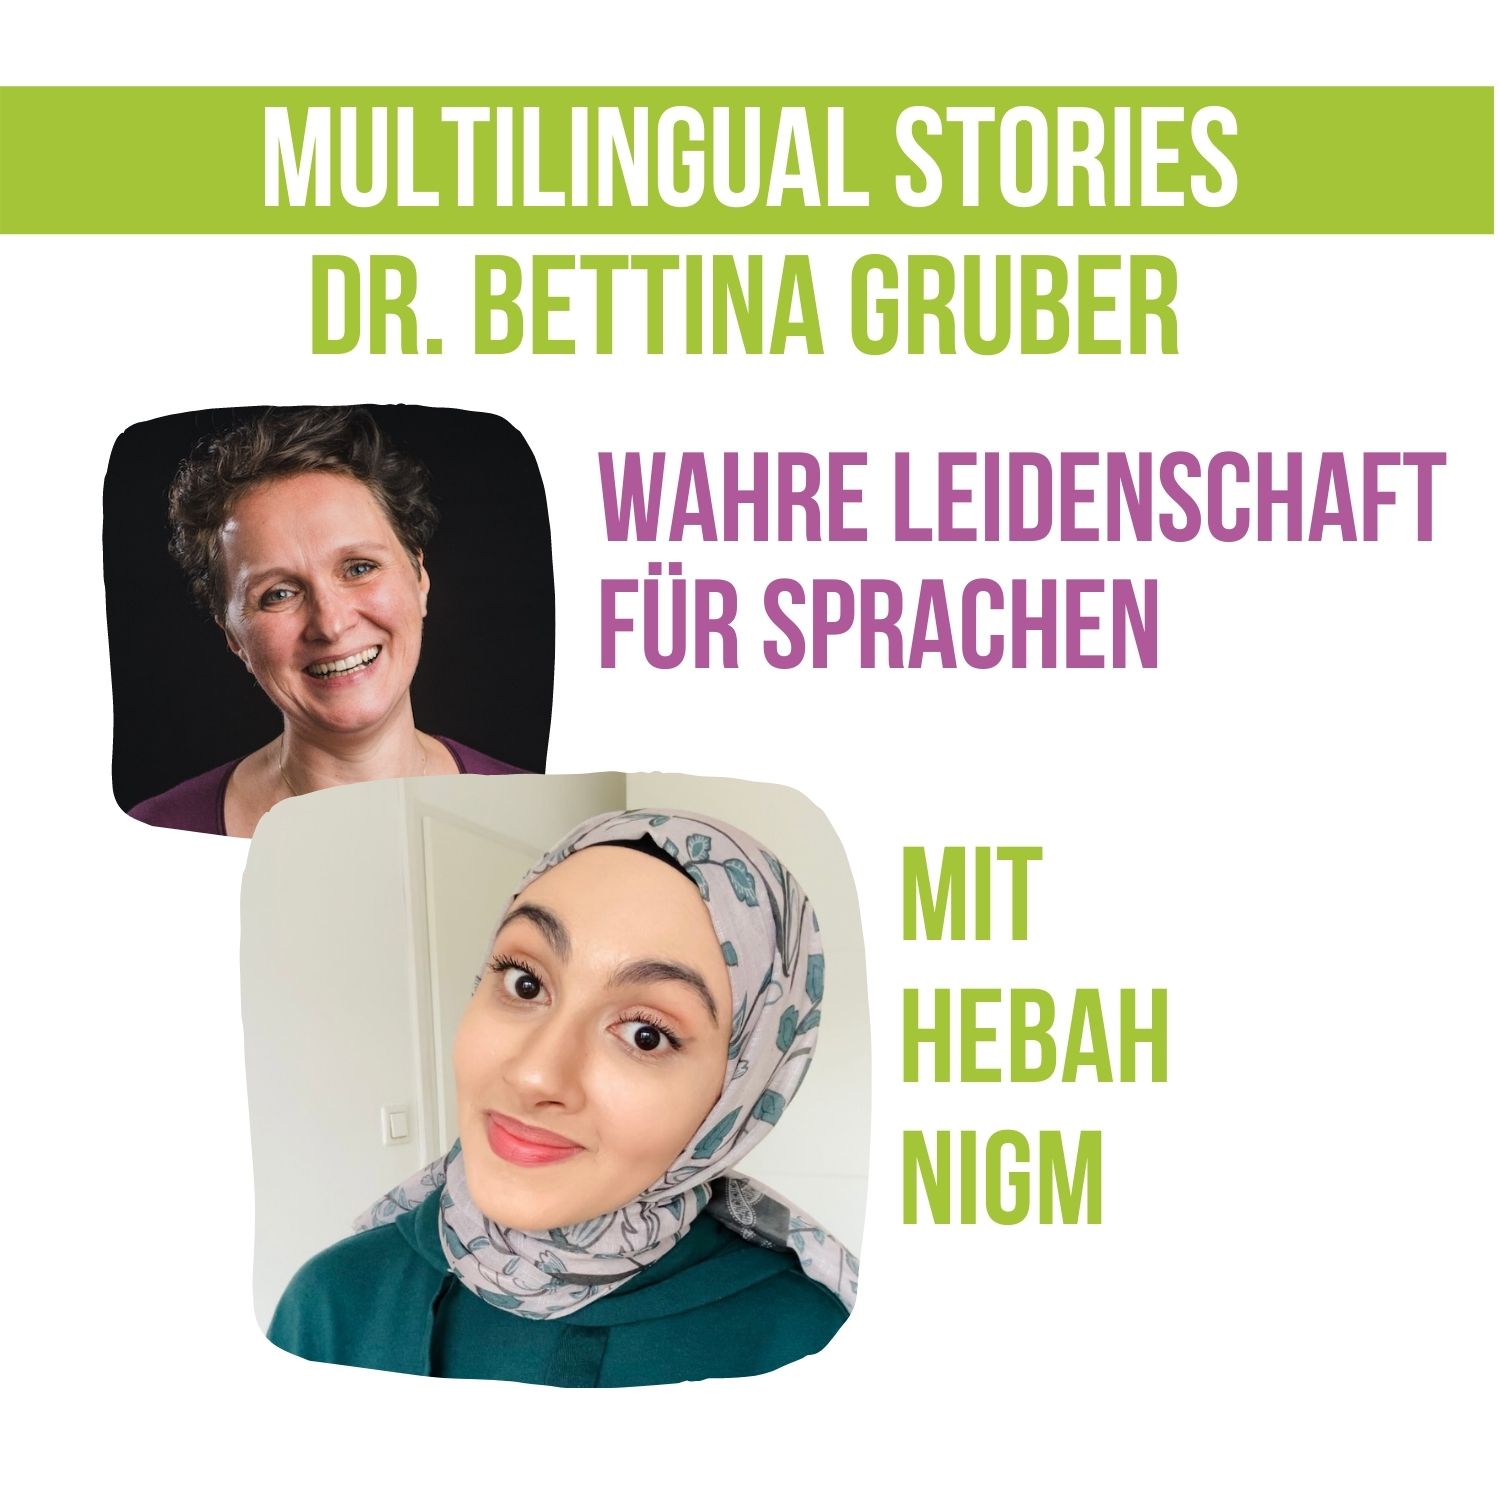 Wahre Leidenschaft für Sprachen | die Linguistin im Gespräch mit Hebah Nigm